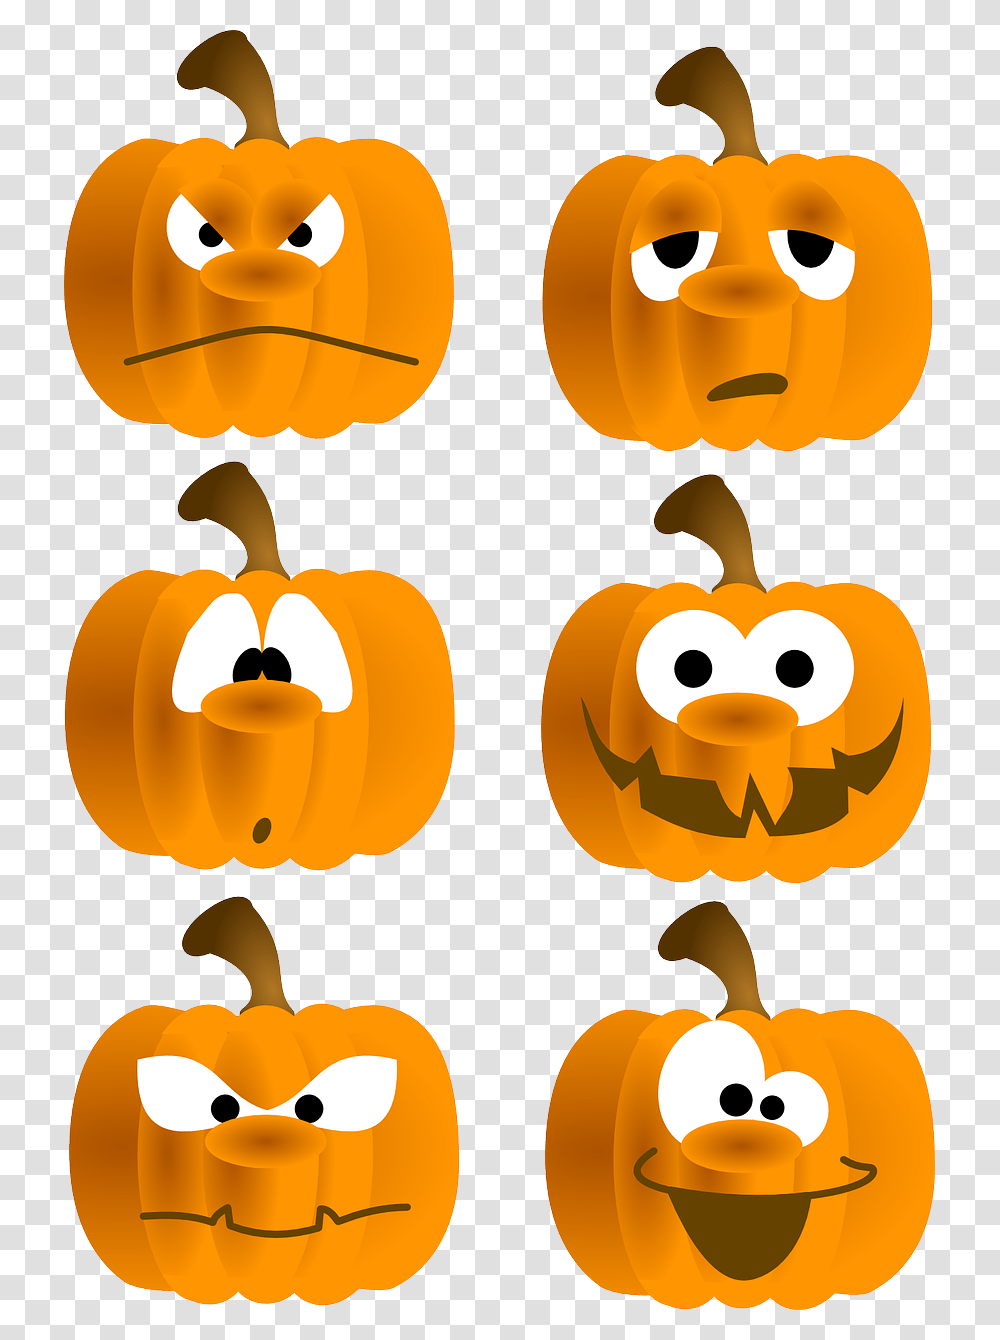 Free Set Of Six Funny Pumpkin Faces Clip Art Silly Pumpkin Faces Clipart, Vegetable, Plant, Food, Halloween Transparent Png